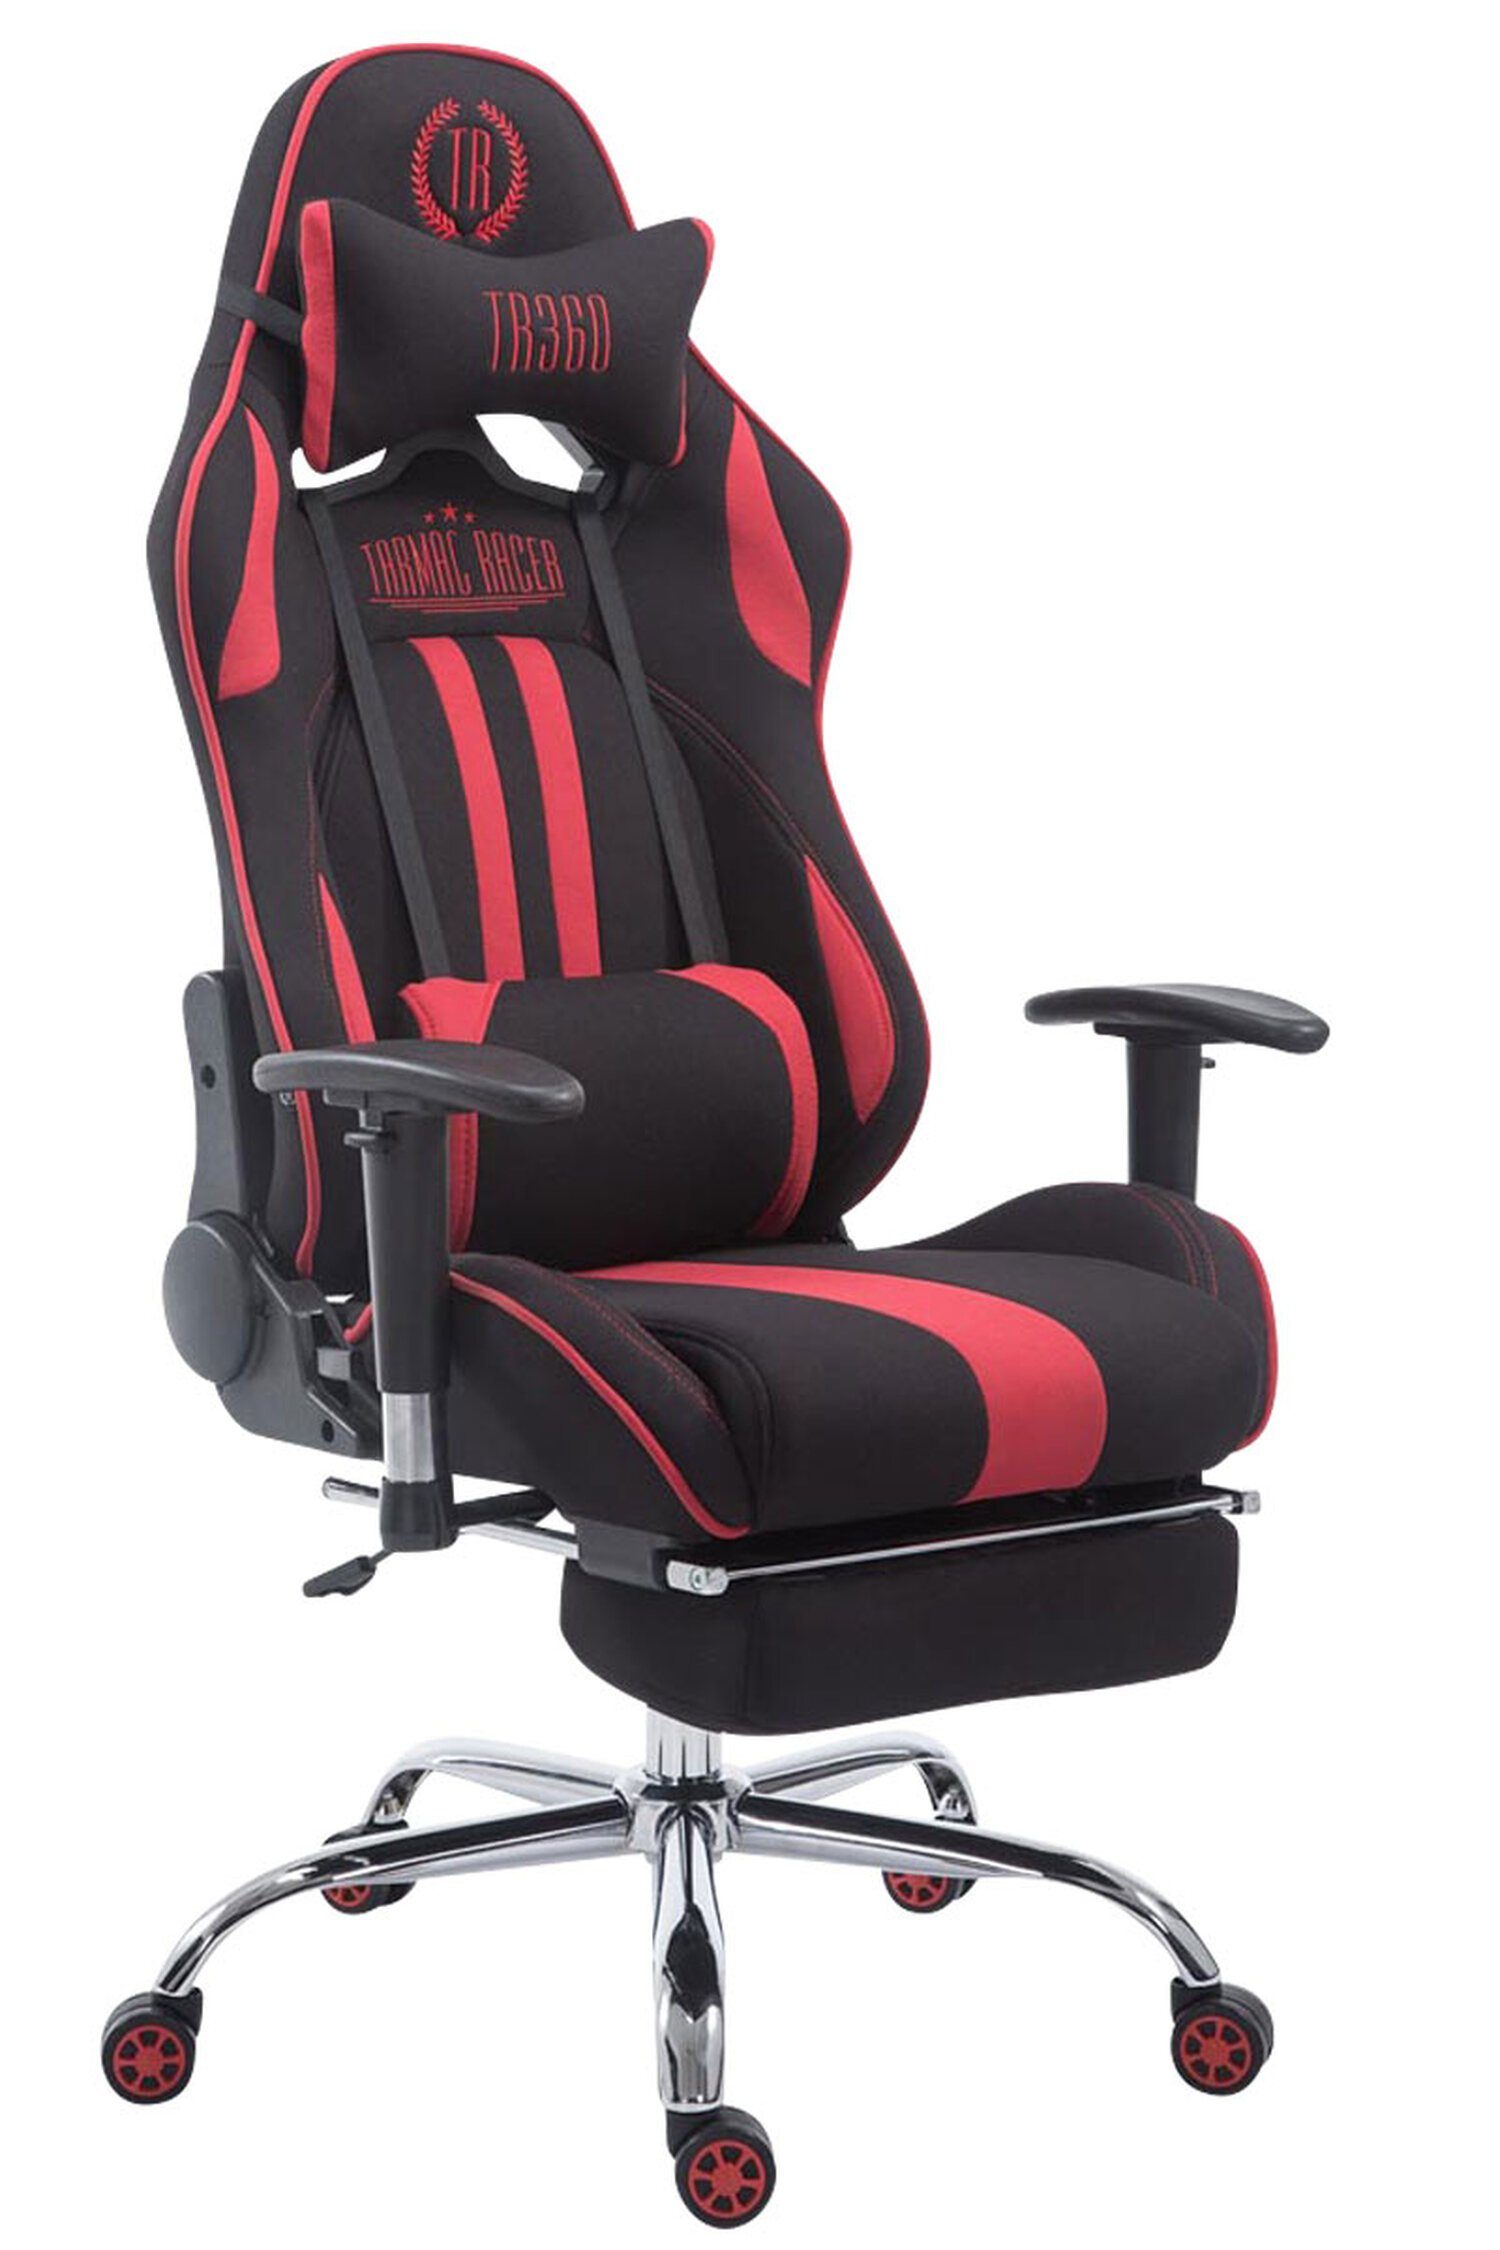 TPFLiving Gaming-Stuhl Limitless-2 mit bequemer Rückenlehne - höhenverstellbar - 360° drehbar (Schreibtischstuhl, Drehstuhl, Gamingstuhl, Racingstuhl, Chefsessel), Gestell: Metall chrom - Sitzfläche: Stoff schwarz/rot